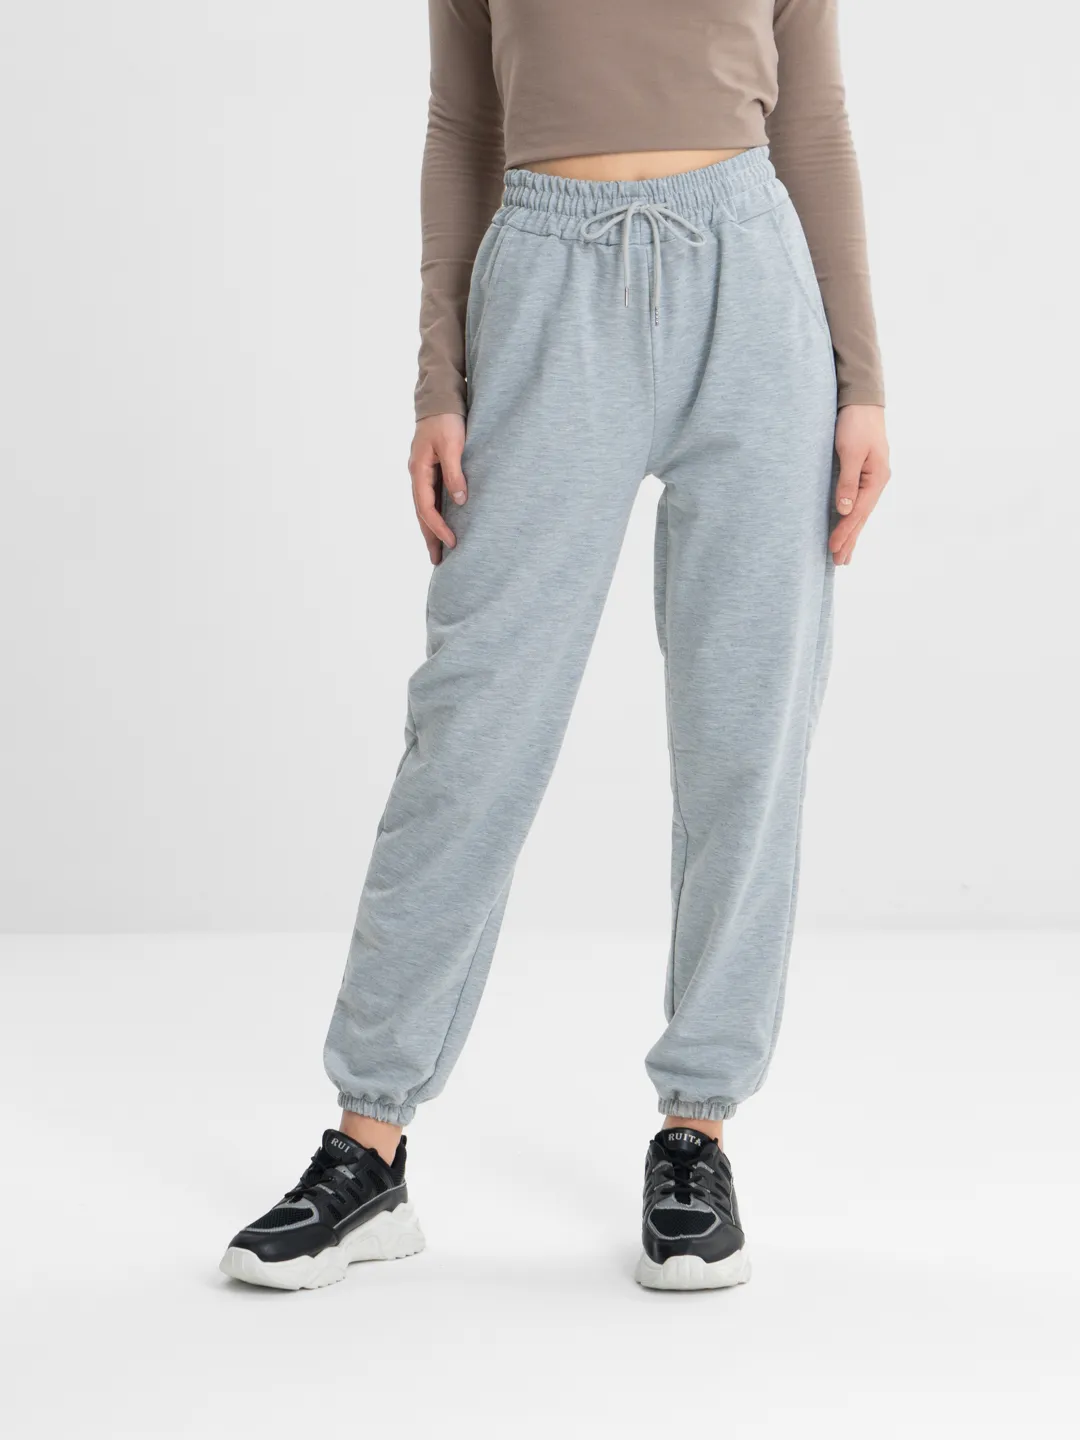 Спортивные штаны, женские, на резинке купить по цене 849 ₽ винтернет-магазине KazanExpress